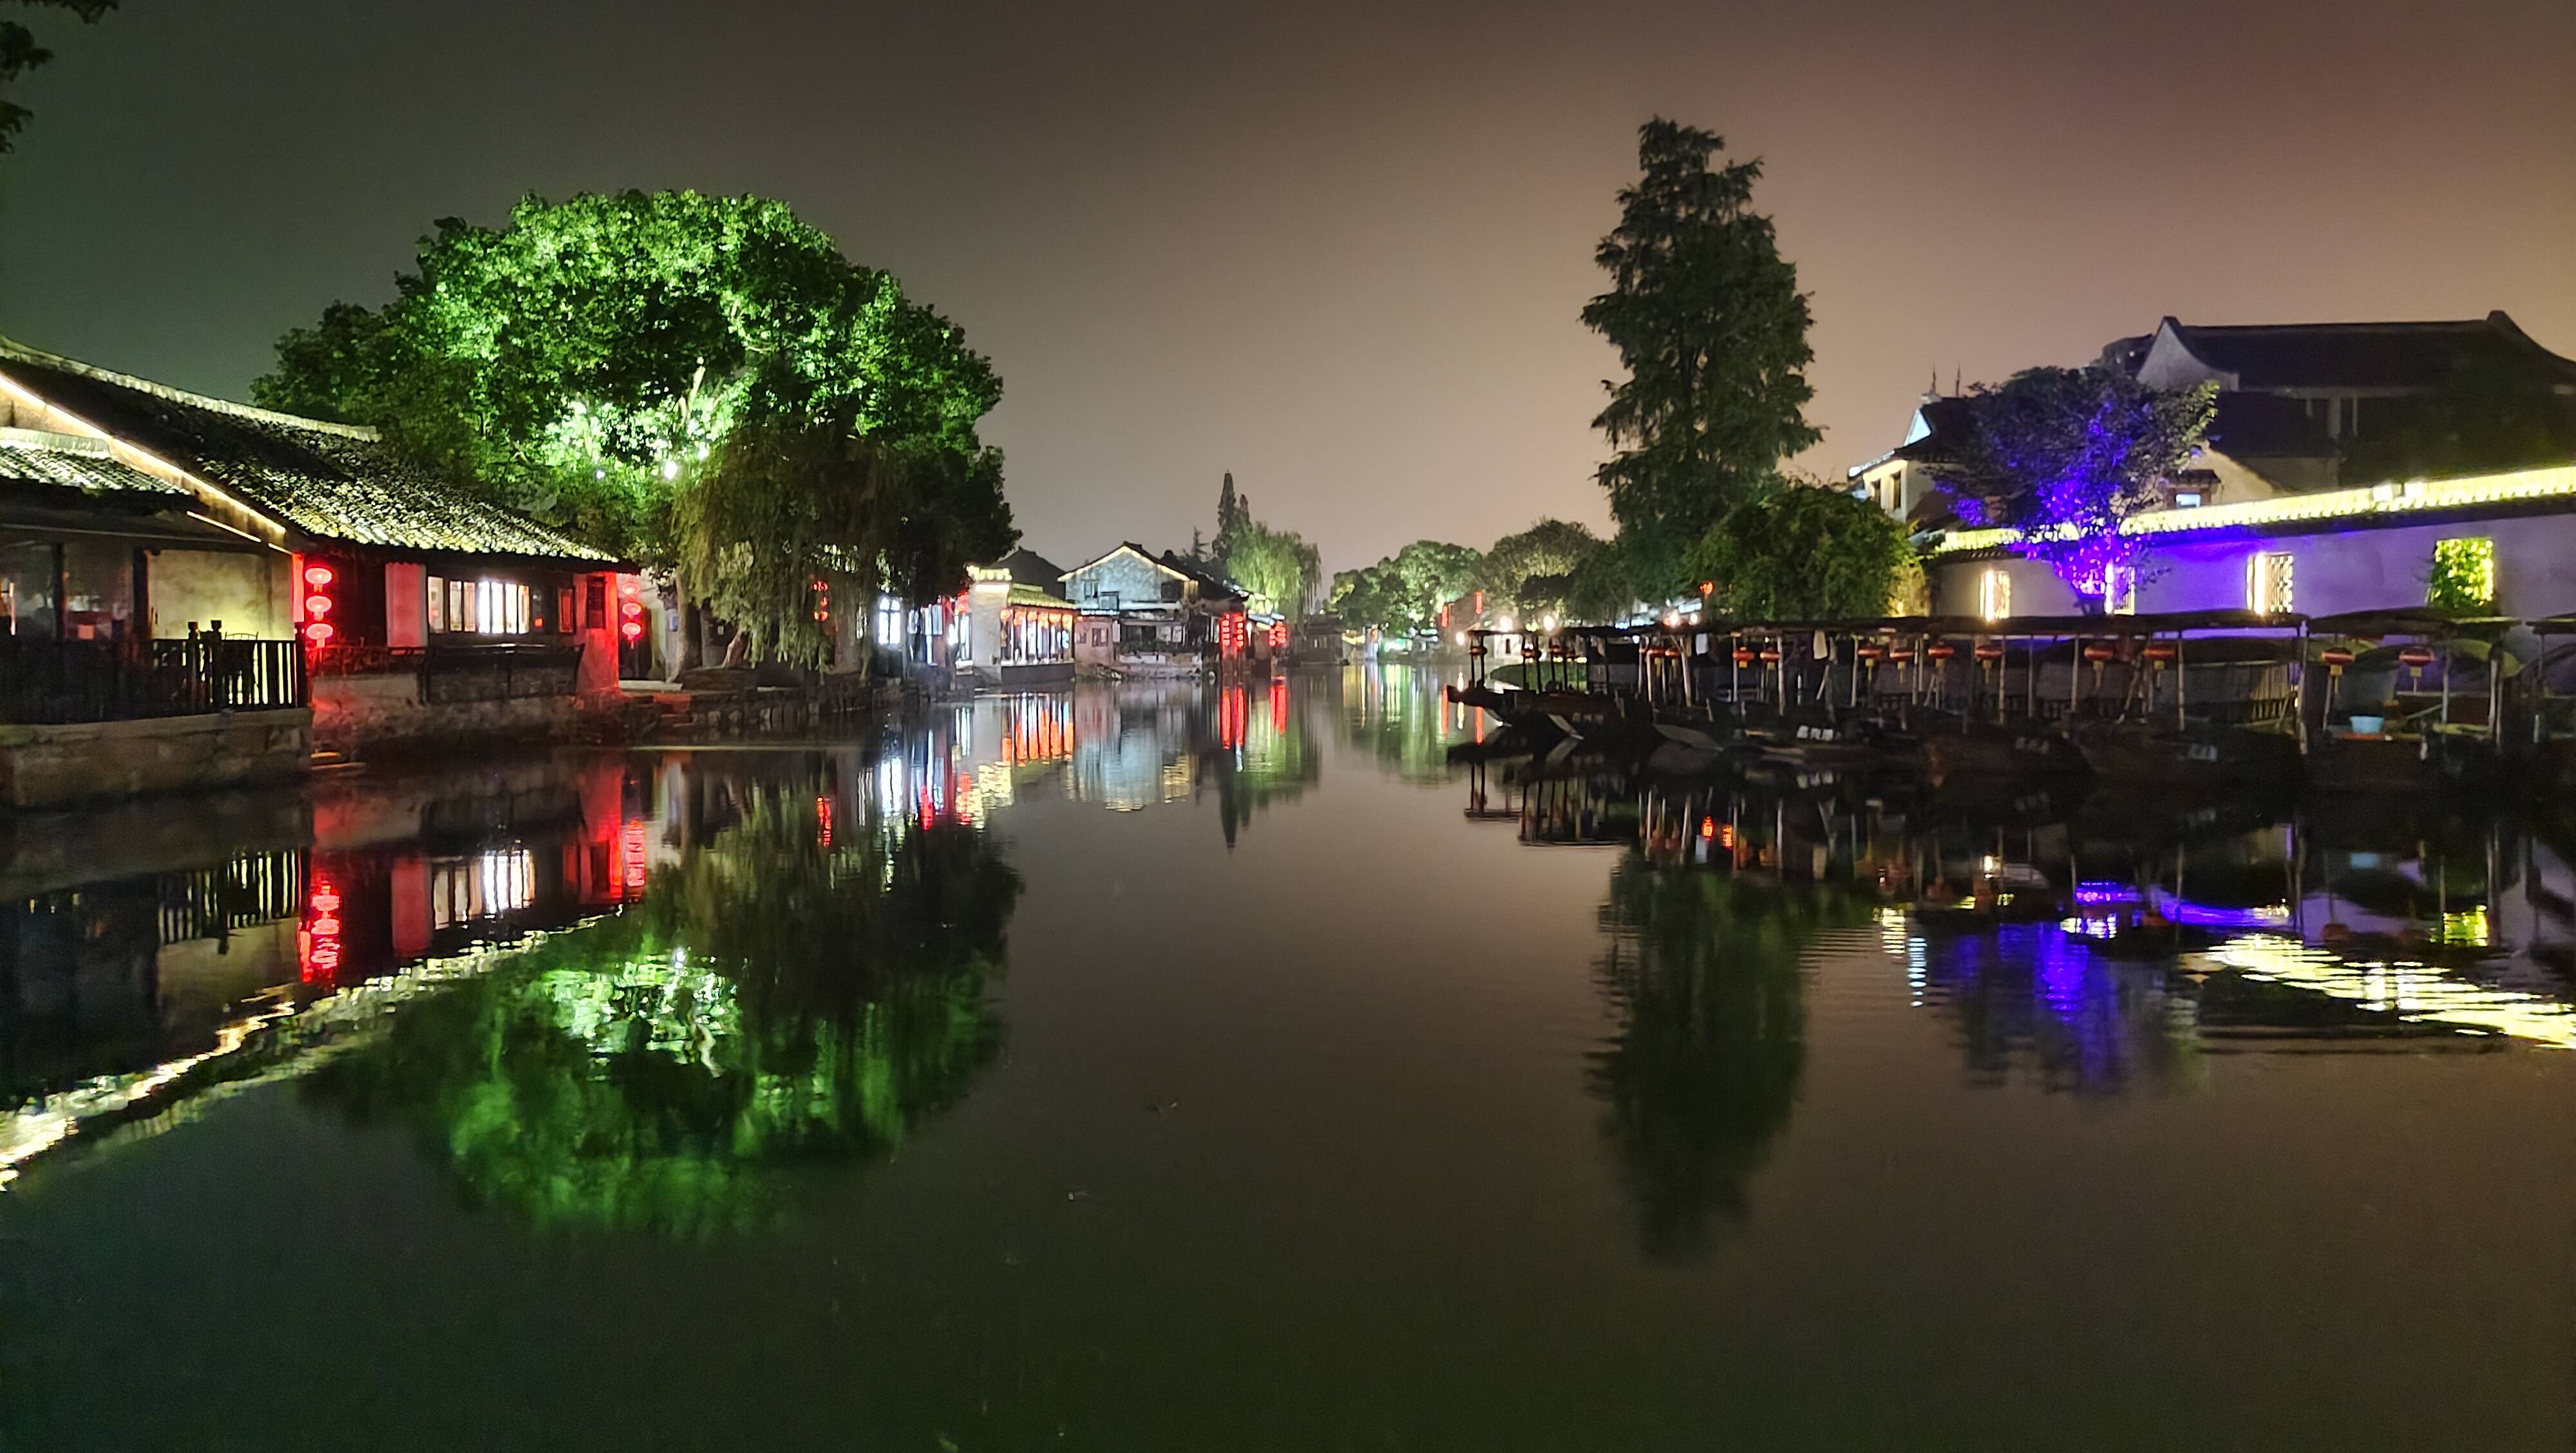 夜游西塘,江南水乡的古镇,灯火阑珊下的美景令人陶醉